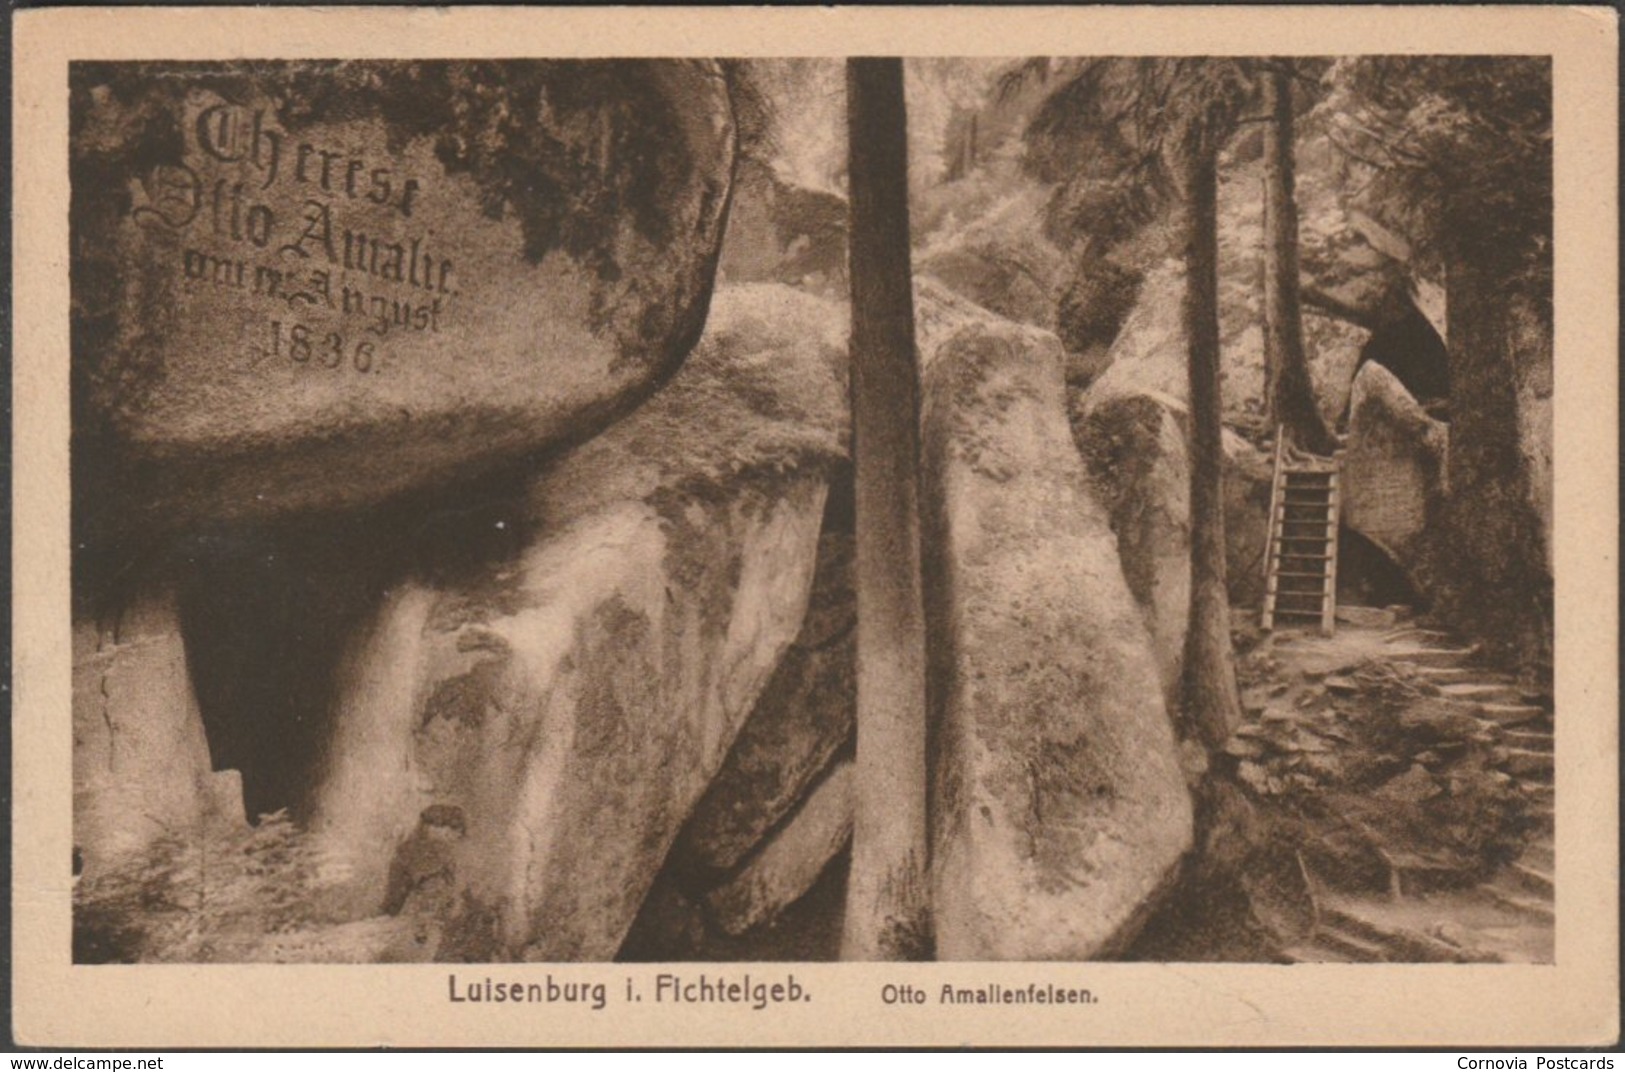 Otto Amalienfelsen, Luisenburg Im Fichtelgebirge, C.1920s - Kohler AK - Wunsiedel